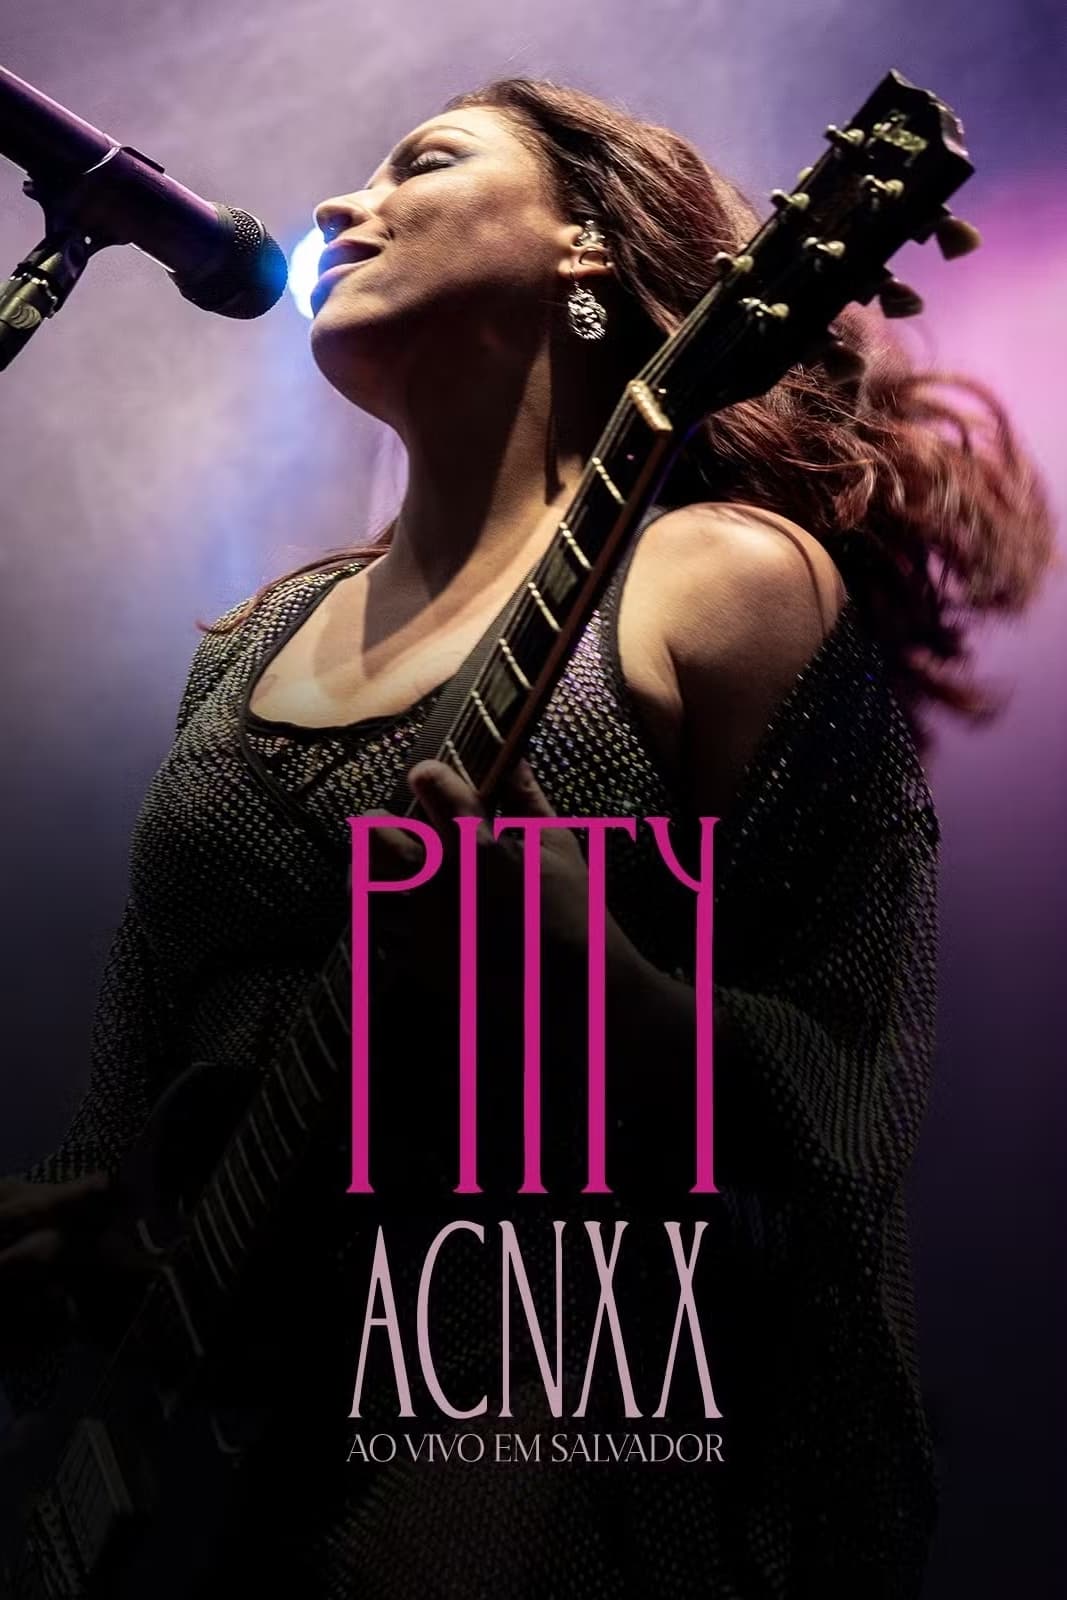 Pitty: ACNXX Ao Vivo em Salvador